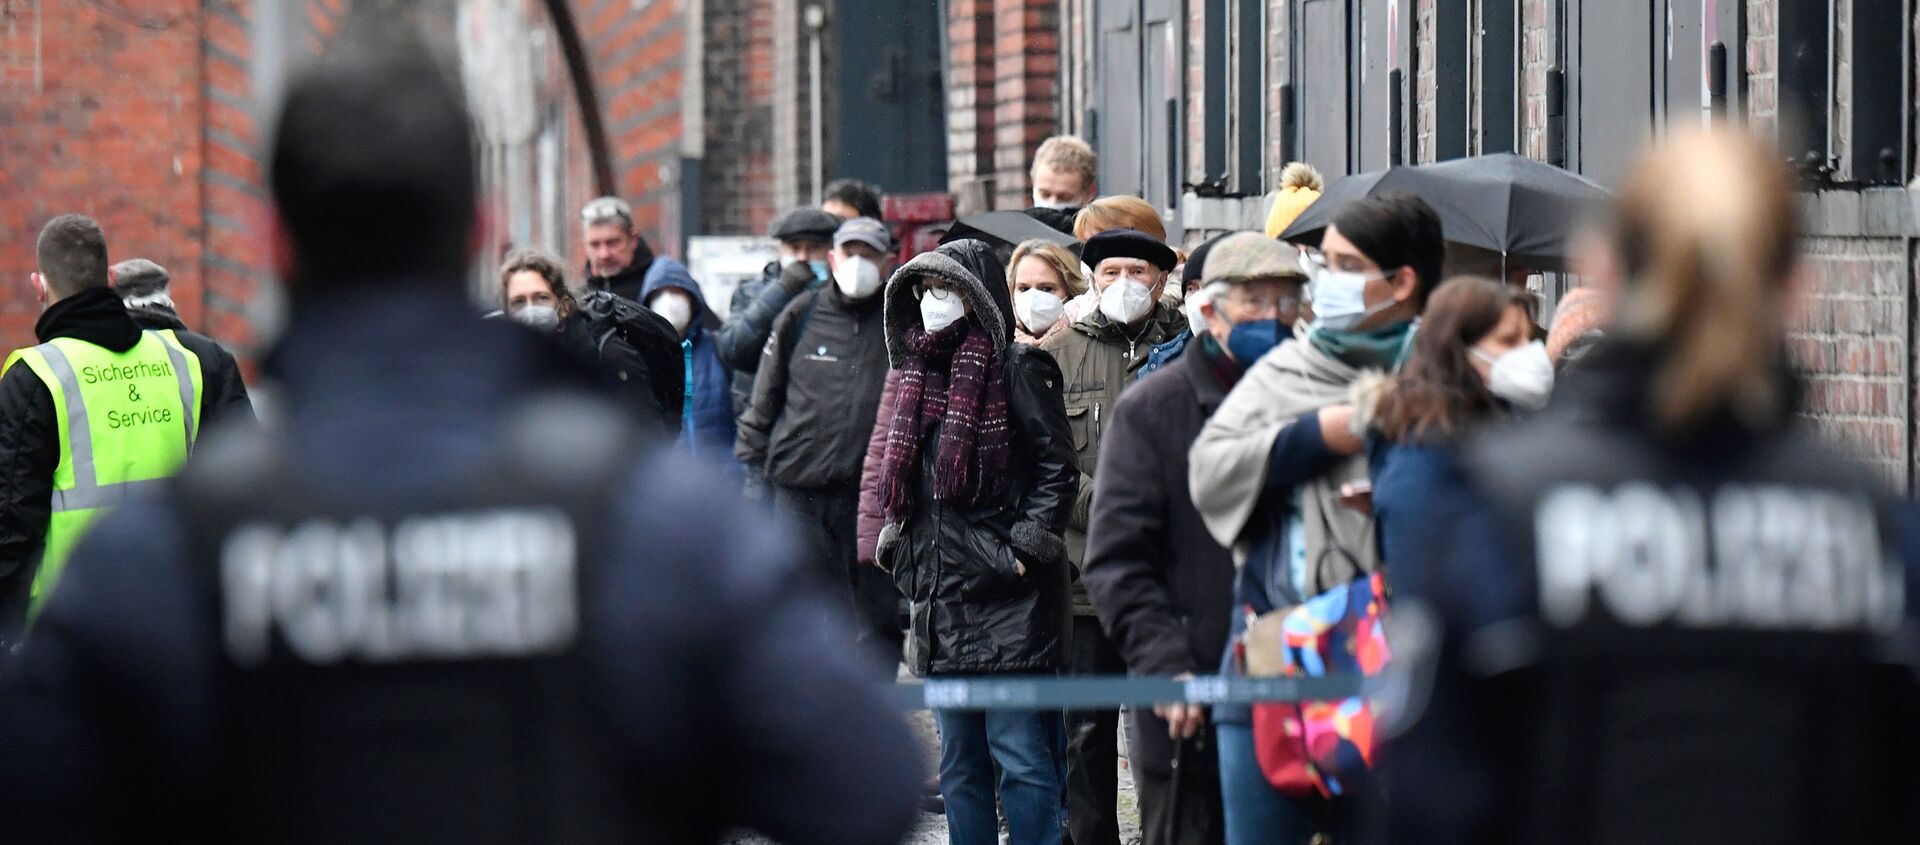 Полиция ждет, пока люди в масках выстраиваются в очередь, чтобы получить доступ к центру вакцинации на «Арене» в берлинском районе Трептов  - Sputnik Абхазия, 1920, 29.01.2021